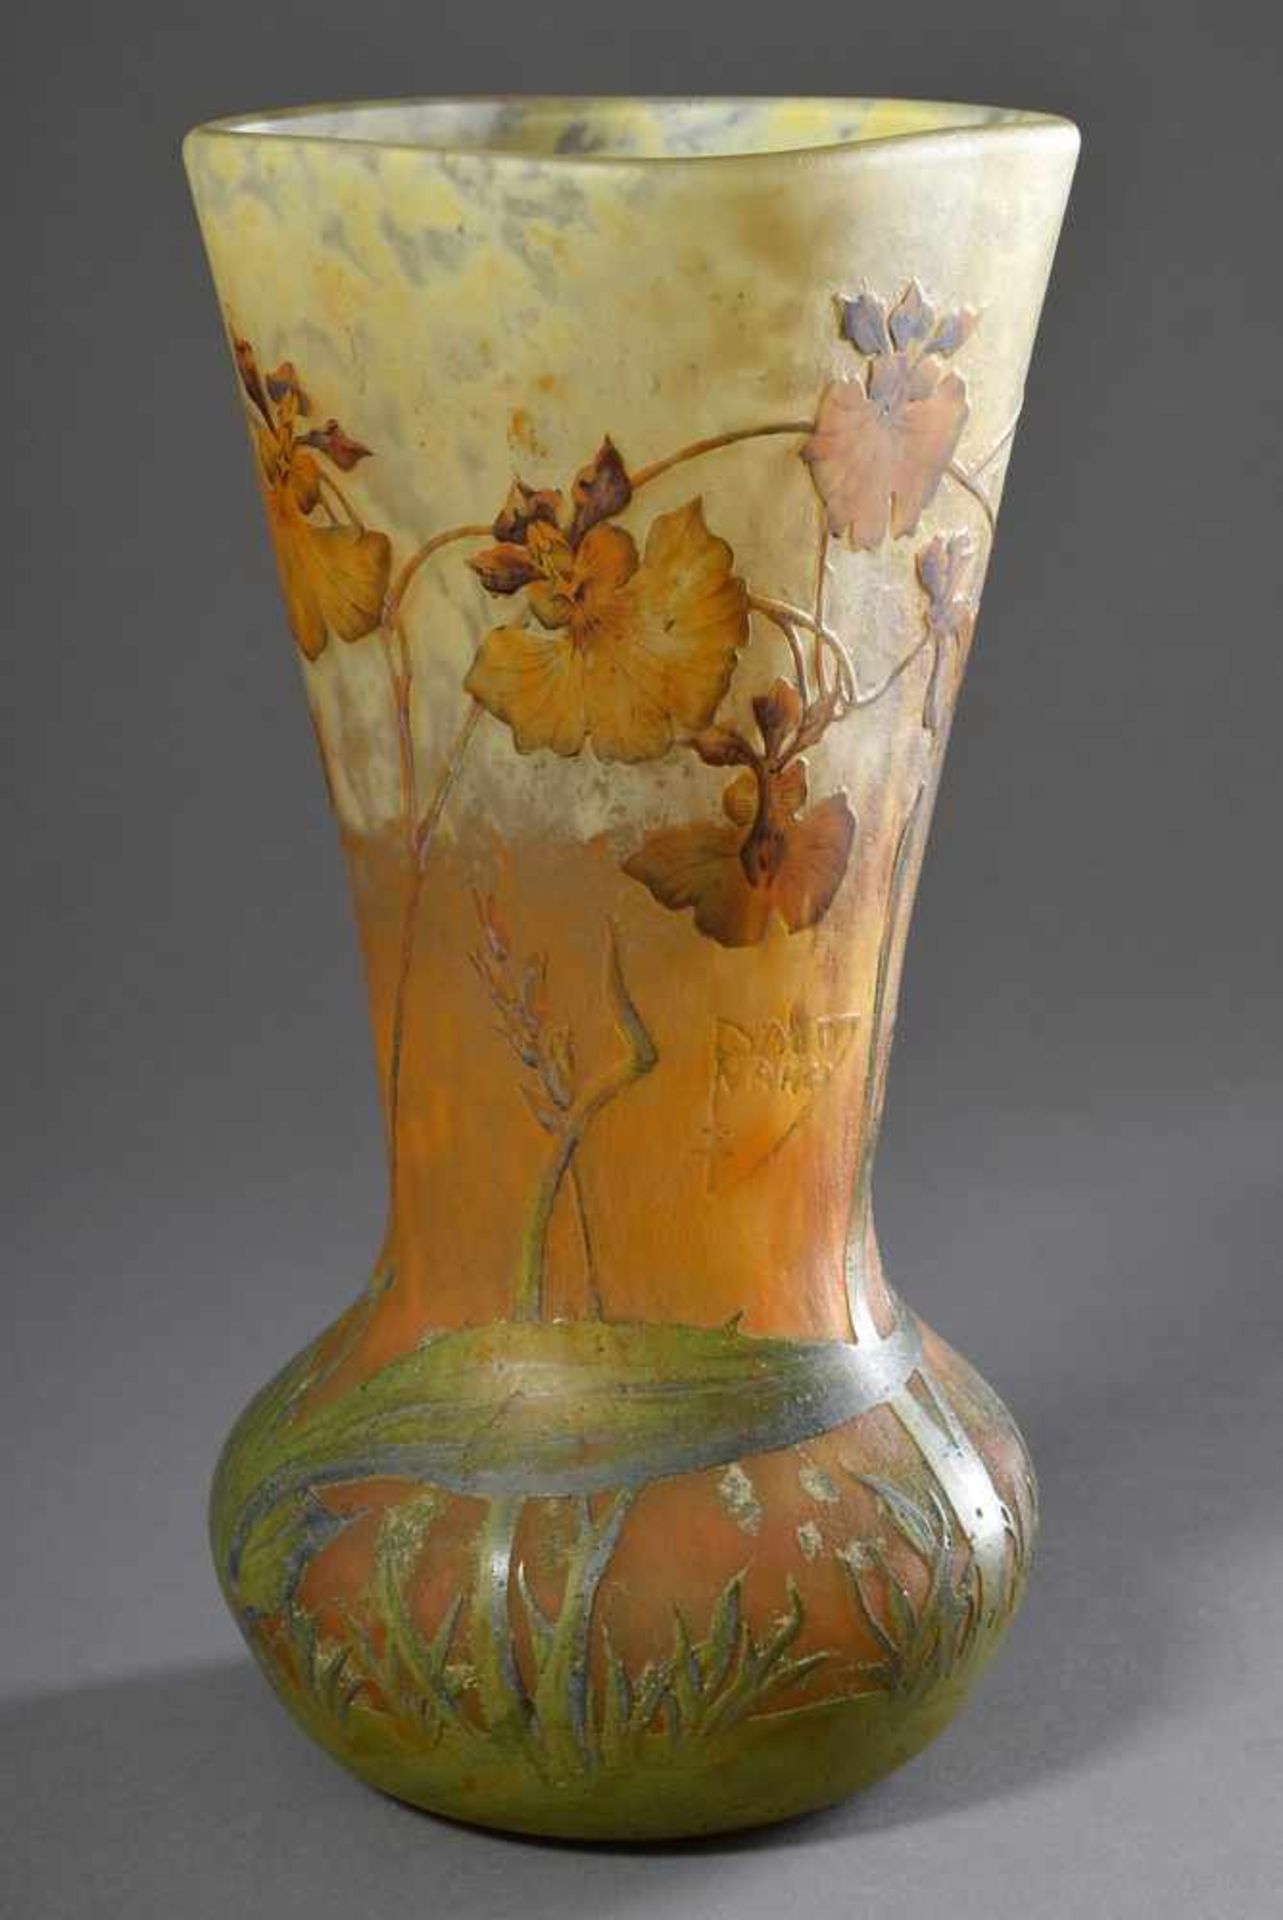 Große Daum/Nancy Vase "Orchideen" mit bauchigem Korpus und langem trichterförmigem Hals, grün/